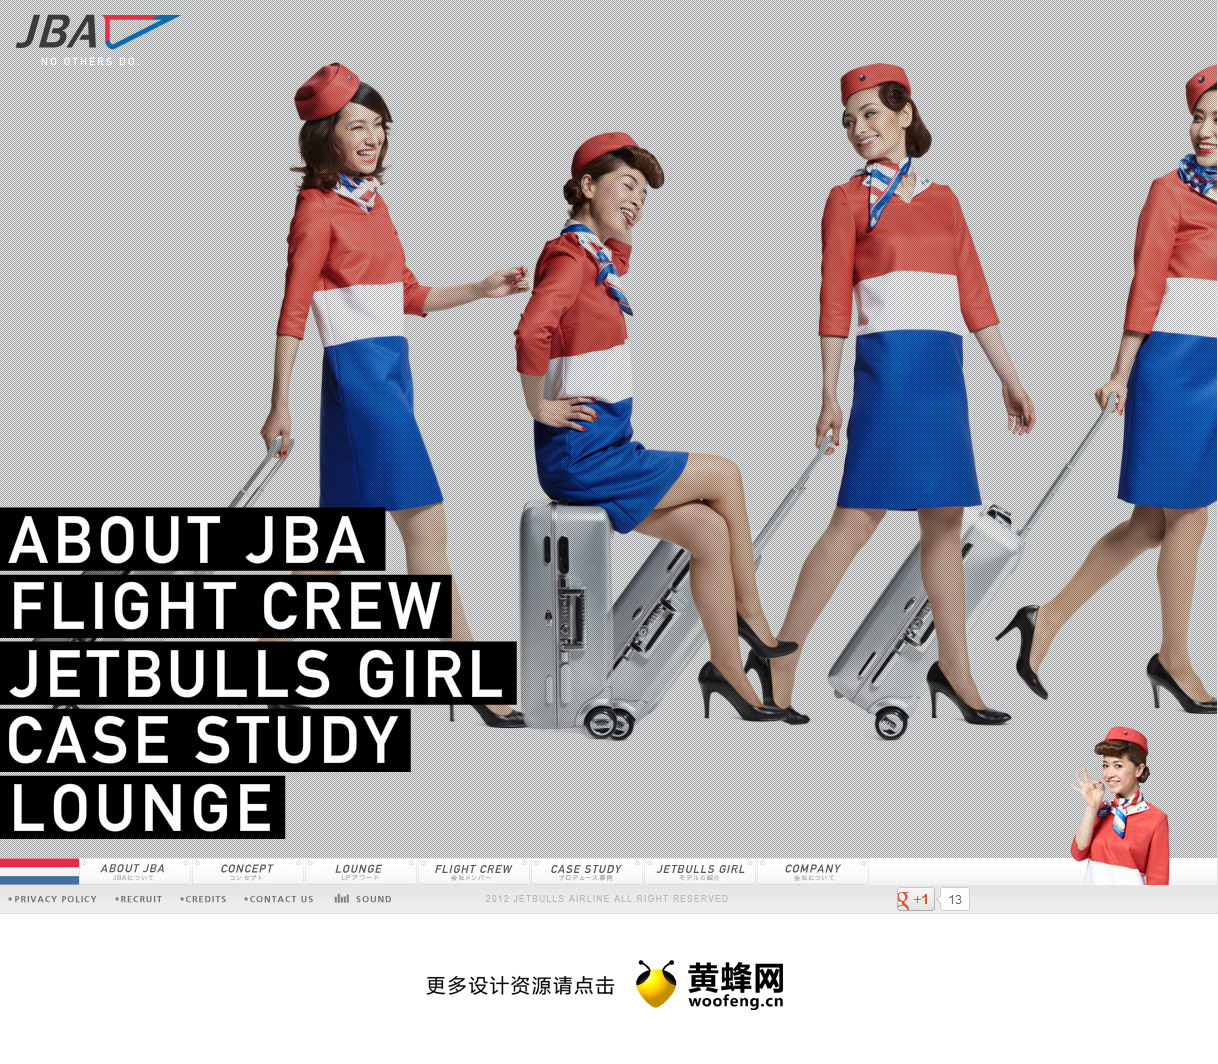 JETBULLS航空公司，来源自黄蜂网https://woofeng.cn/web/